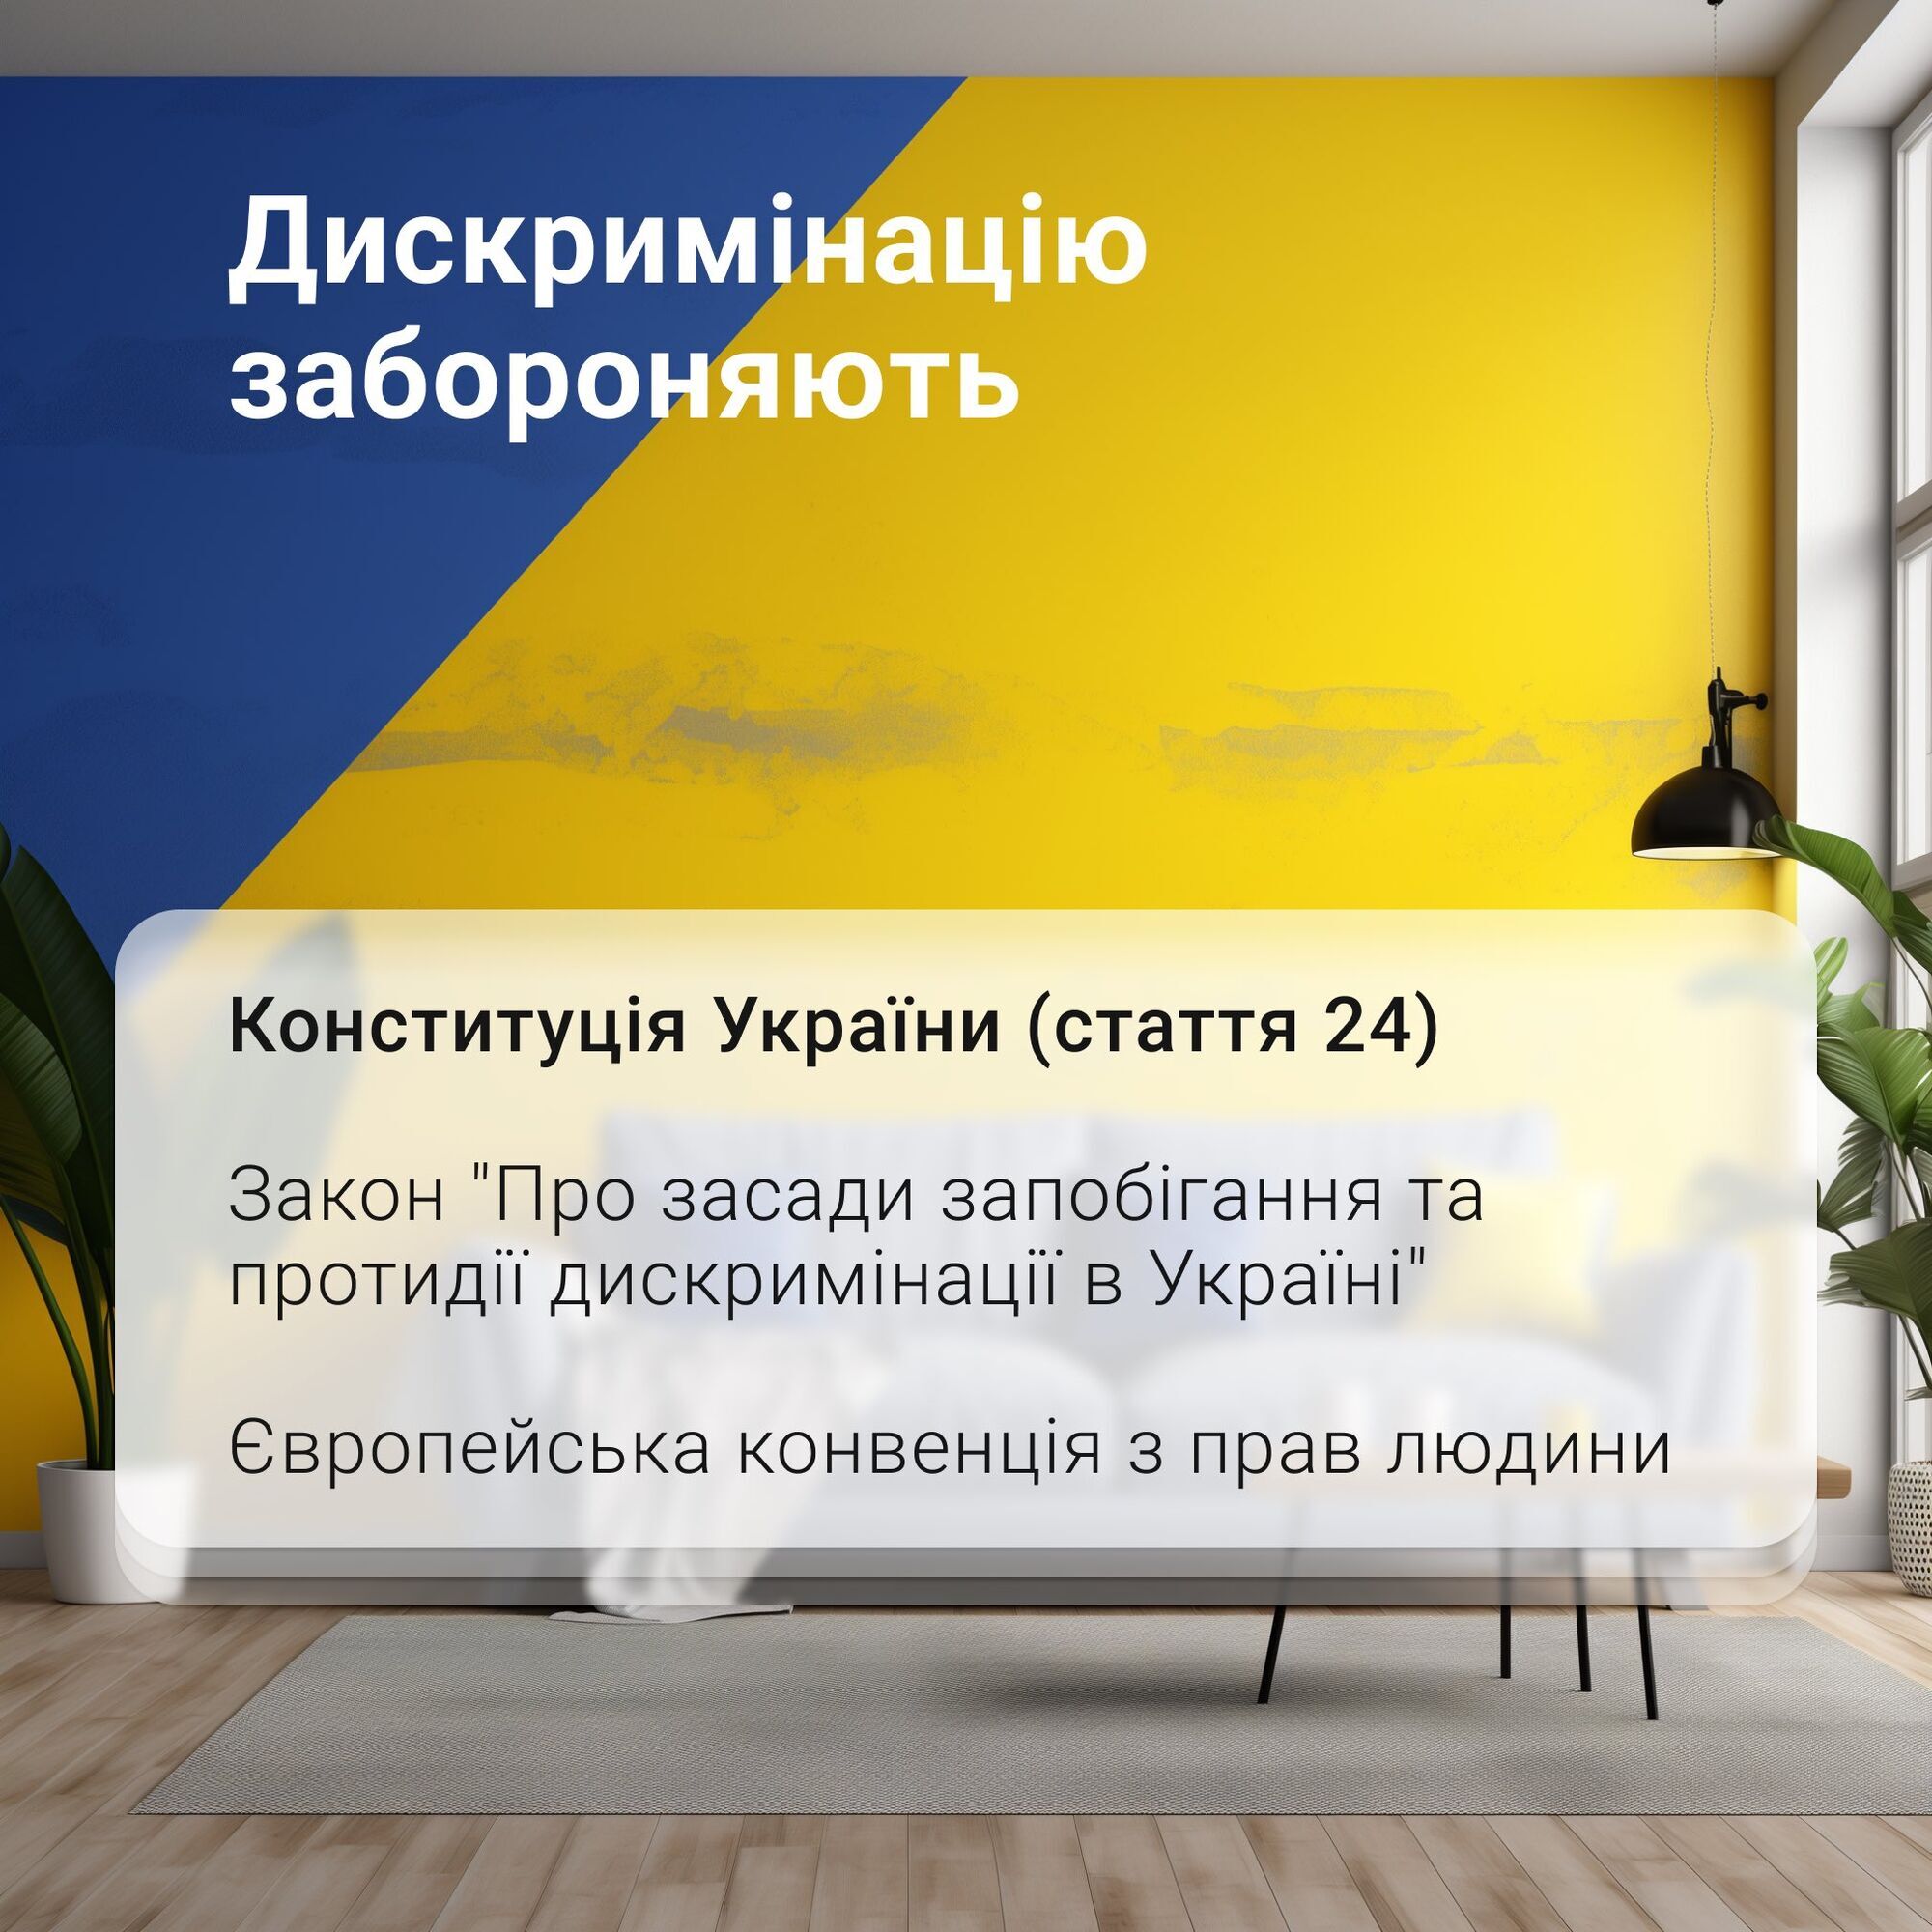 "Я не хочу, чтобы в квартире жил инвалид": в Киеве герою войны отказали в аренде жилья из-за боевых травм